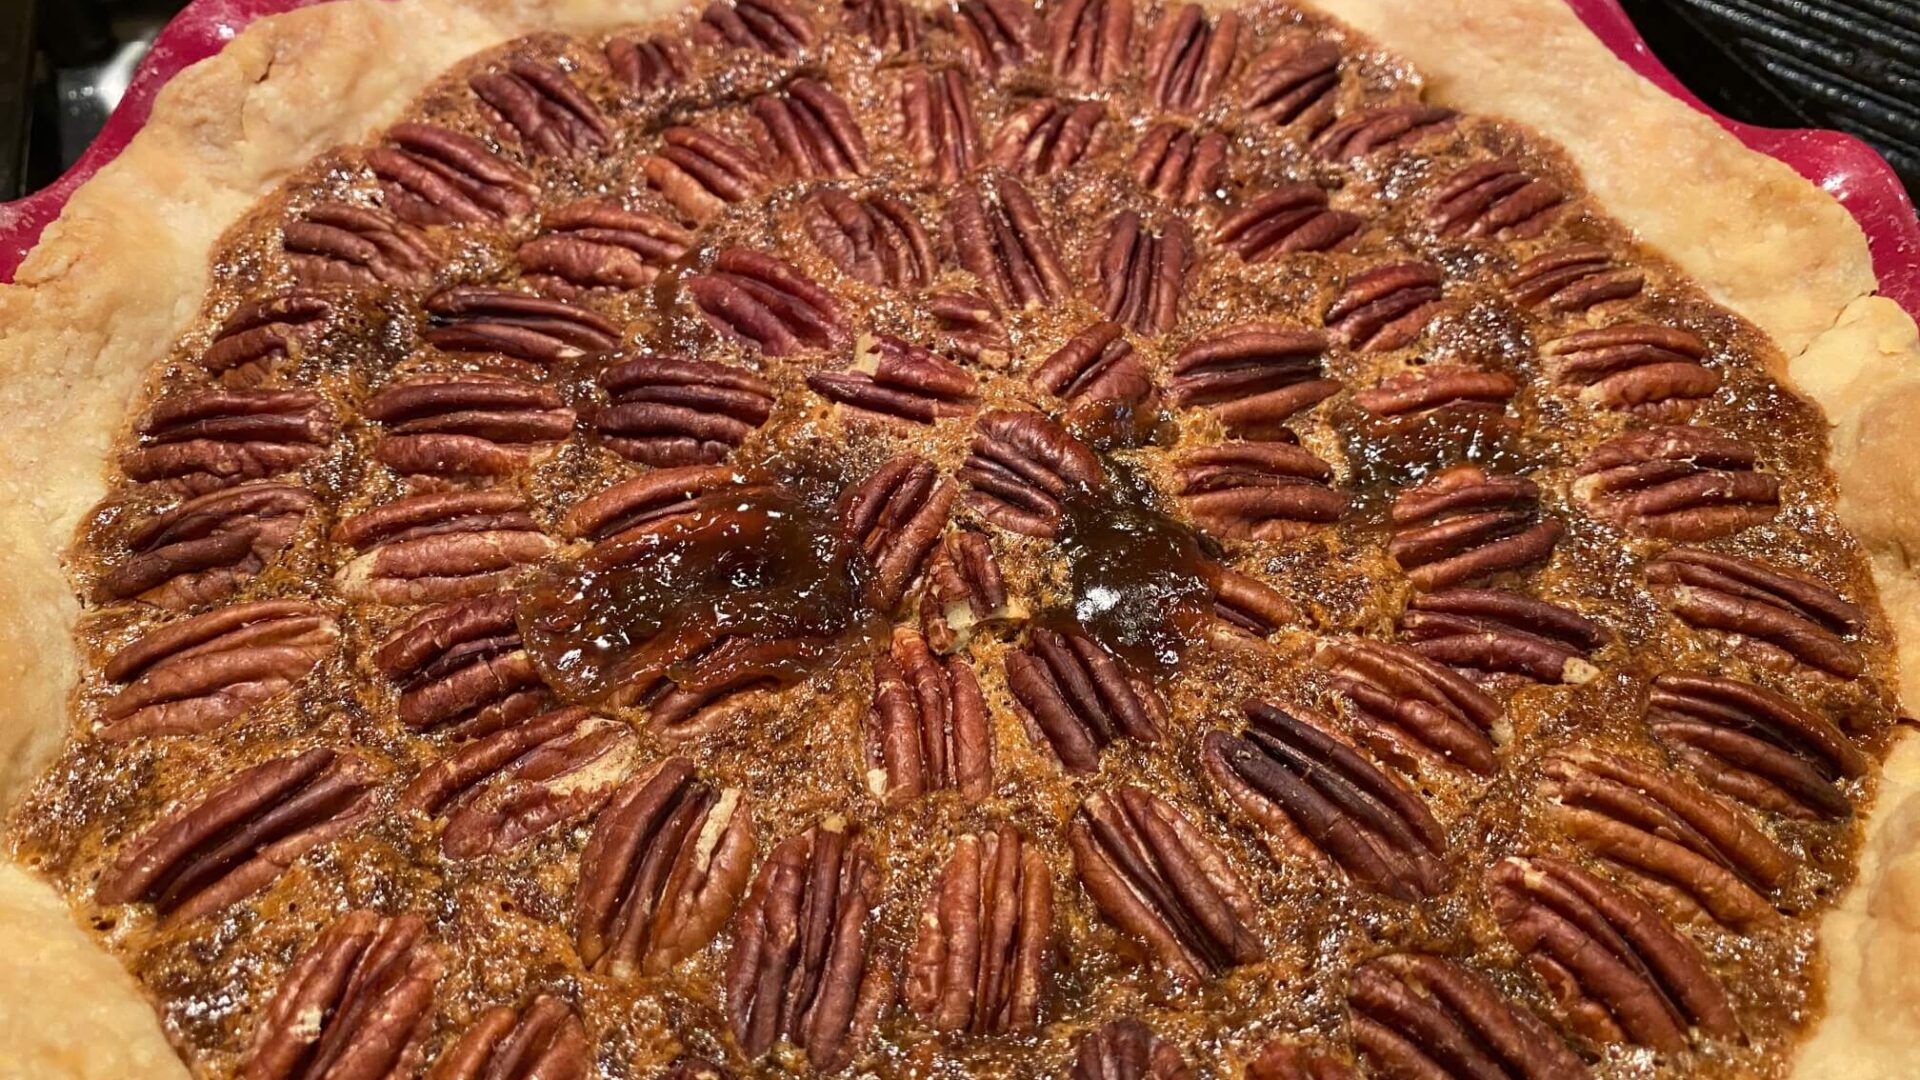 Pecan Pie with flaky crust